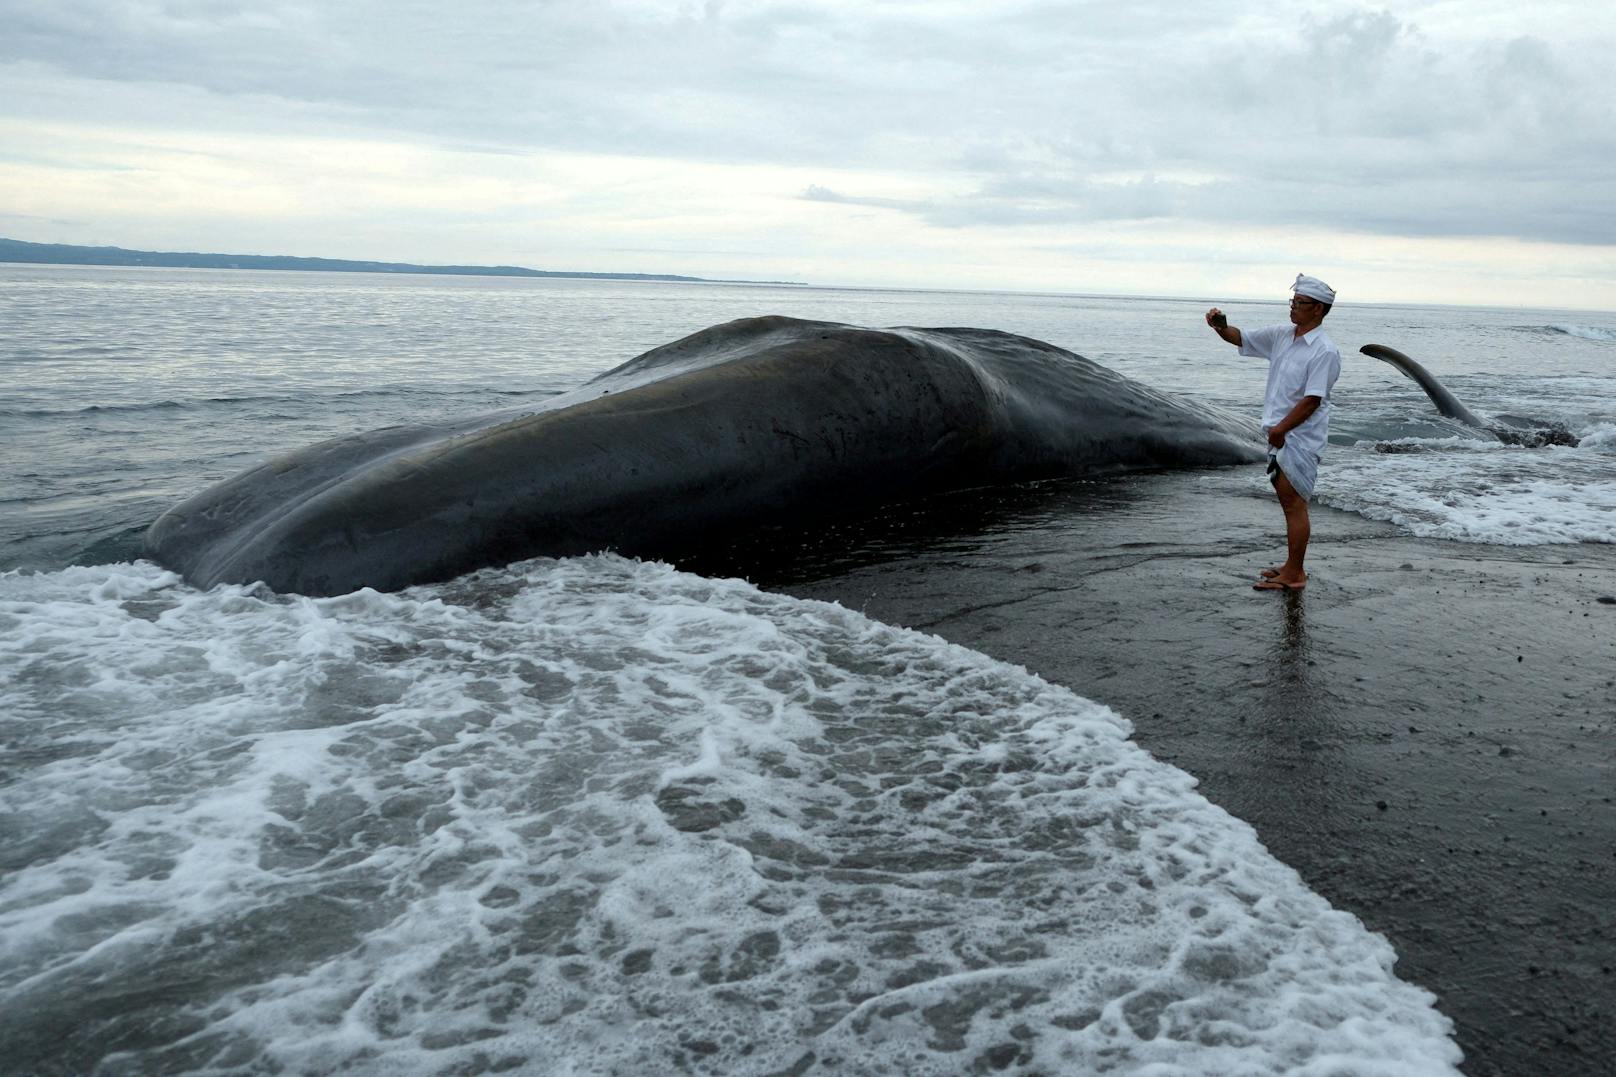 Dritter Wal innerhalb einer Woche auf Bali gestrandet